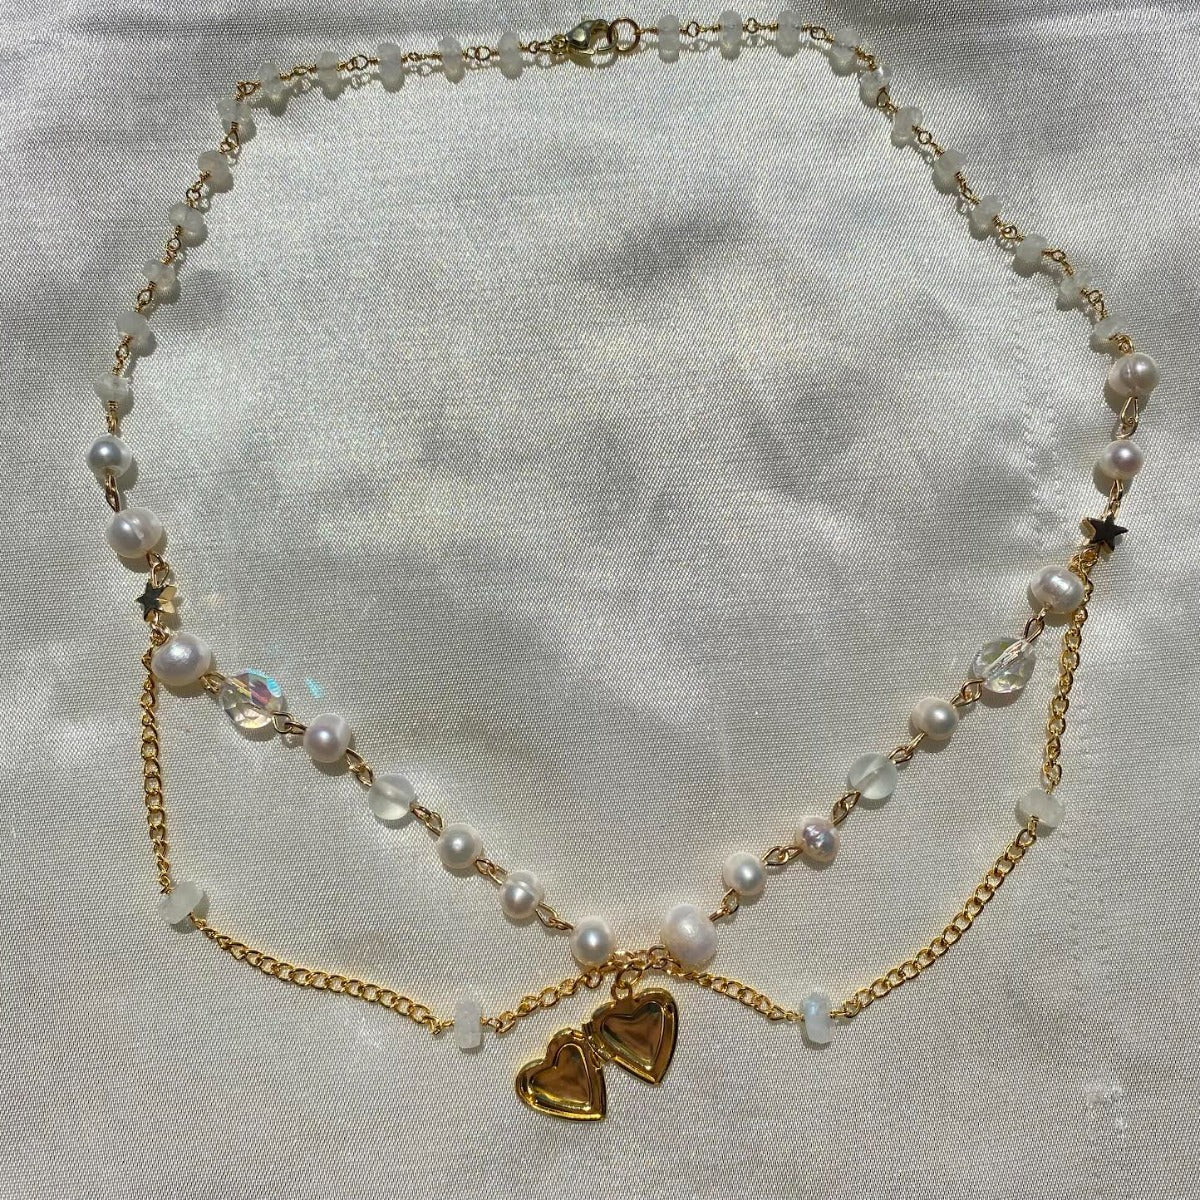 luna locket - necklace